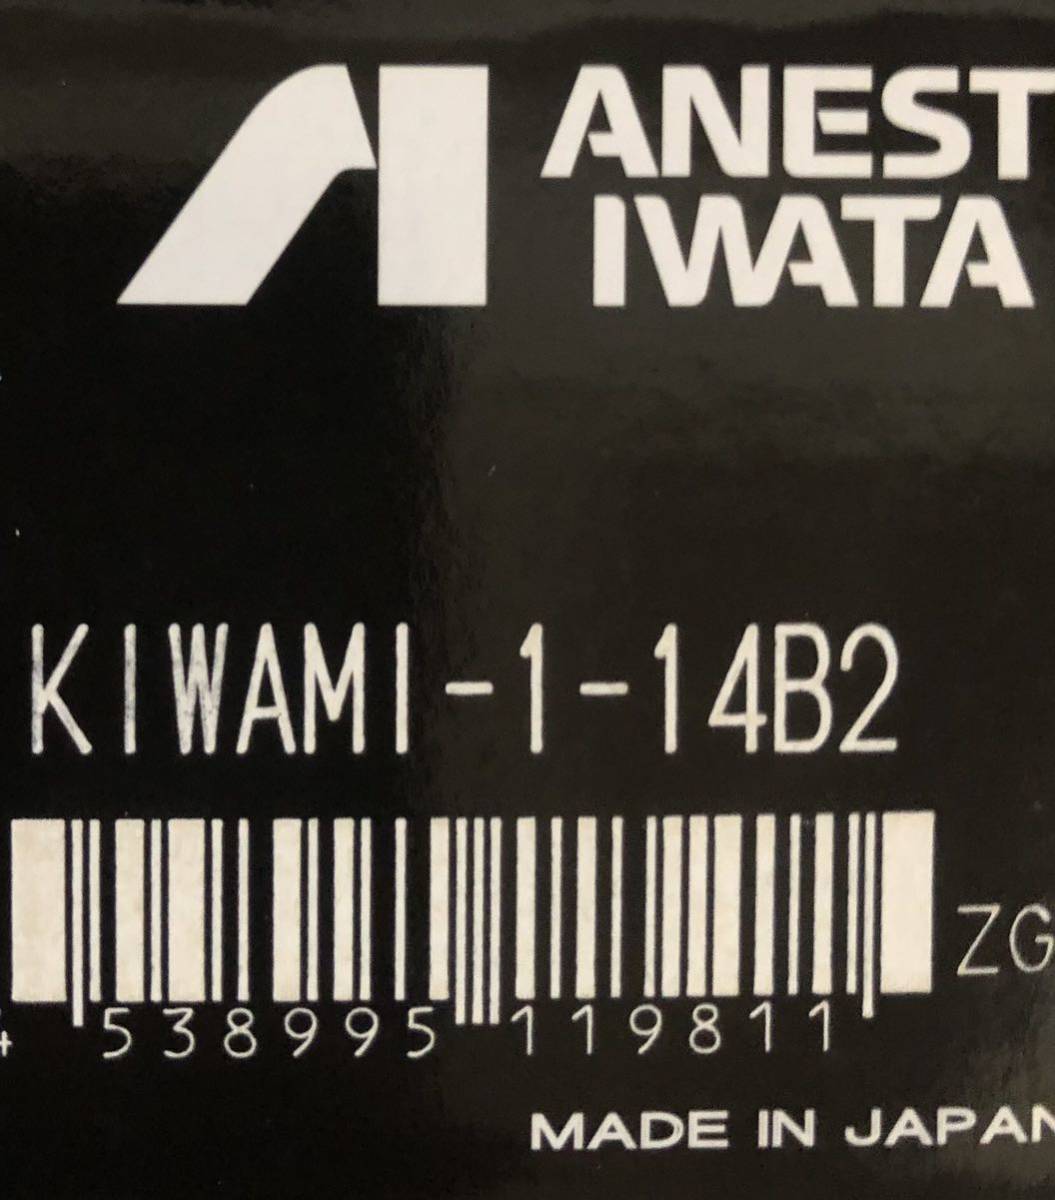 アネスト岩田 KIWAMI-1-14B42 カップ PC-4S セット